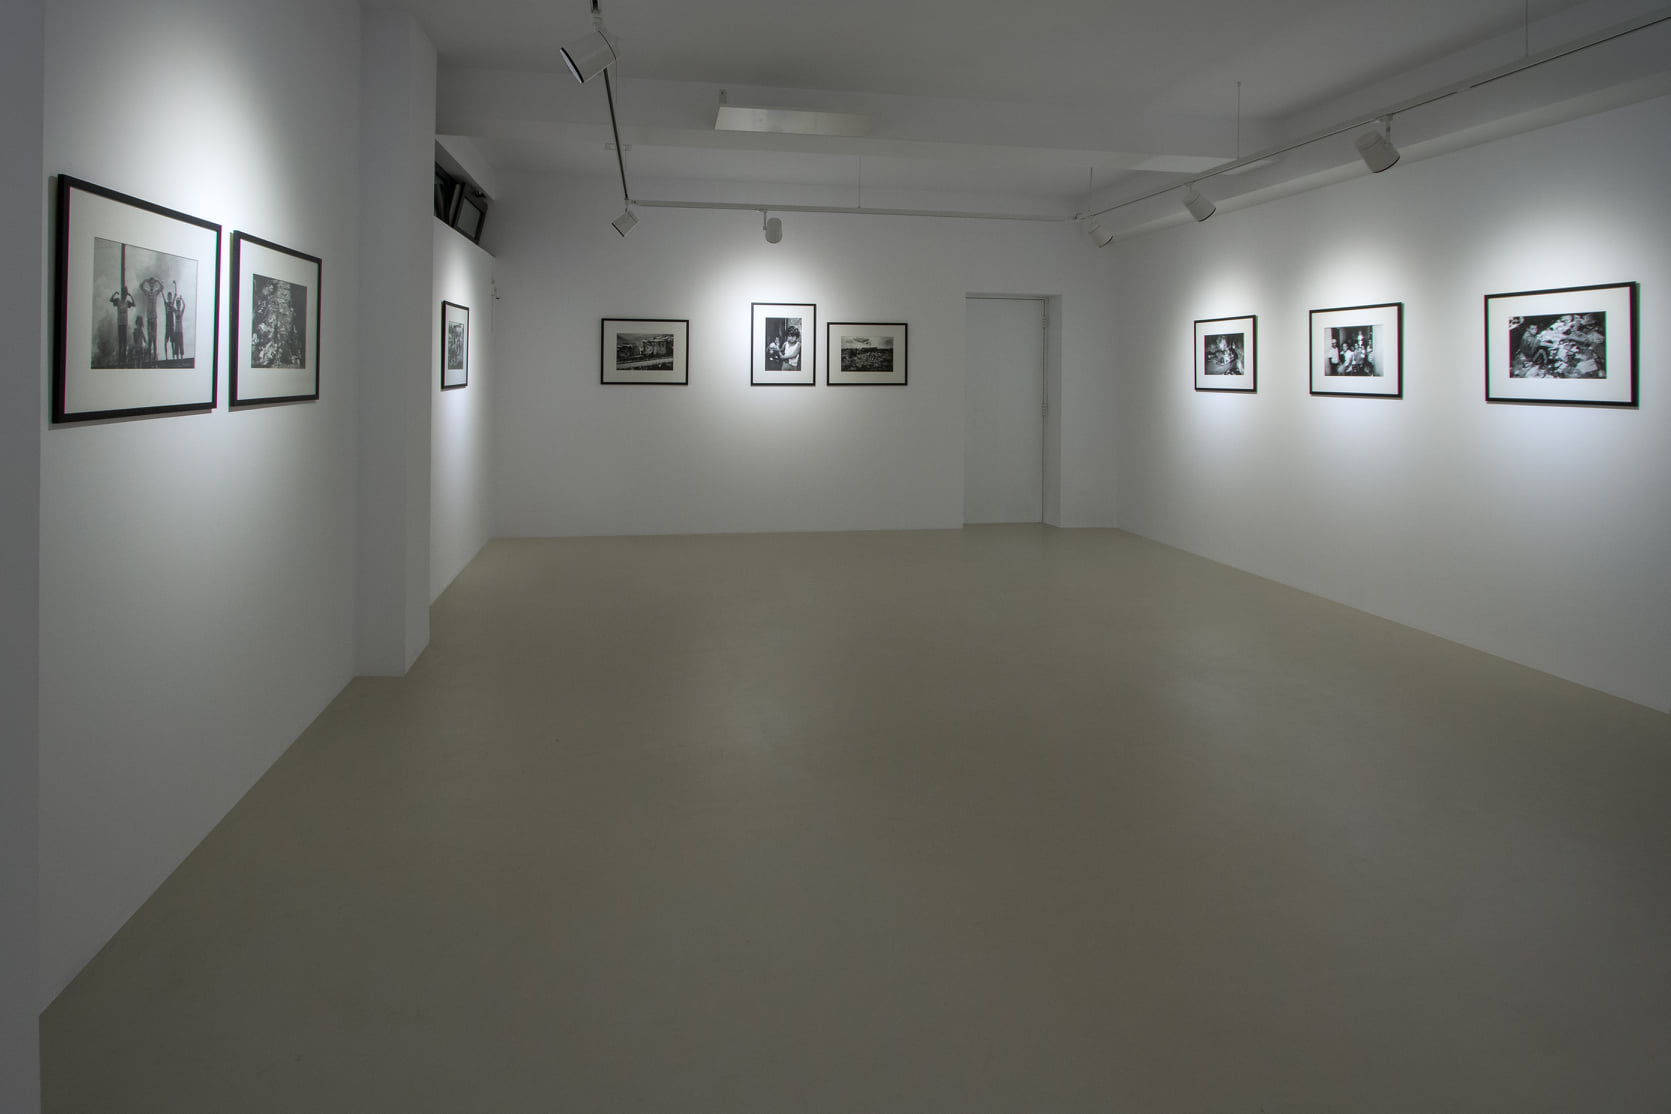 Galerie de arta Iasi, Bordeline Art Space, expozitie de arta, arta contemporana, artisti, spatii